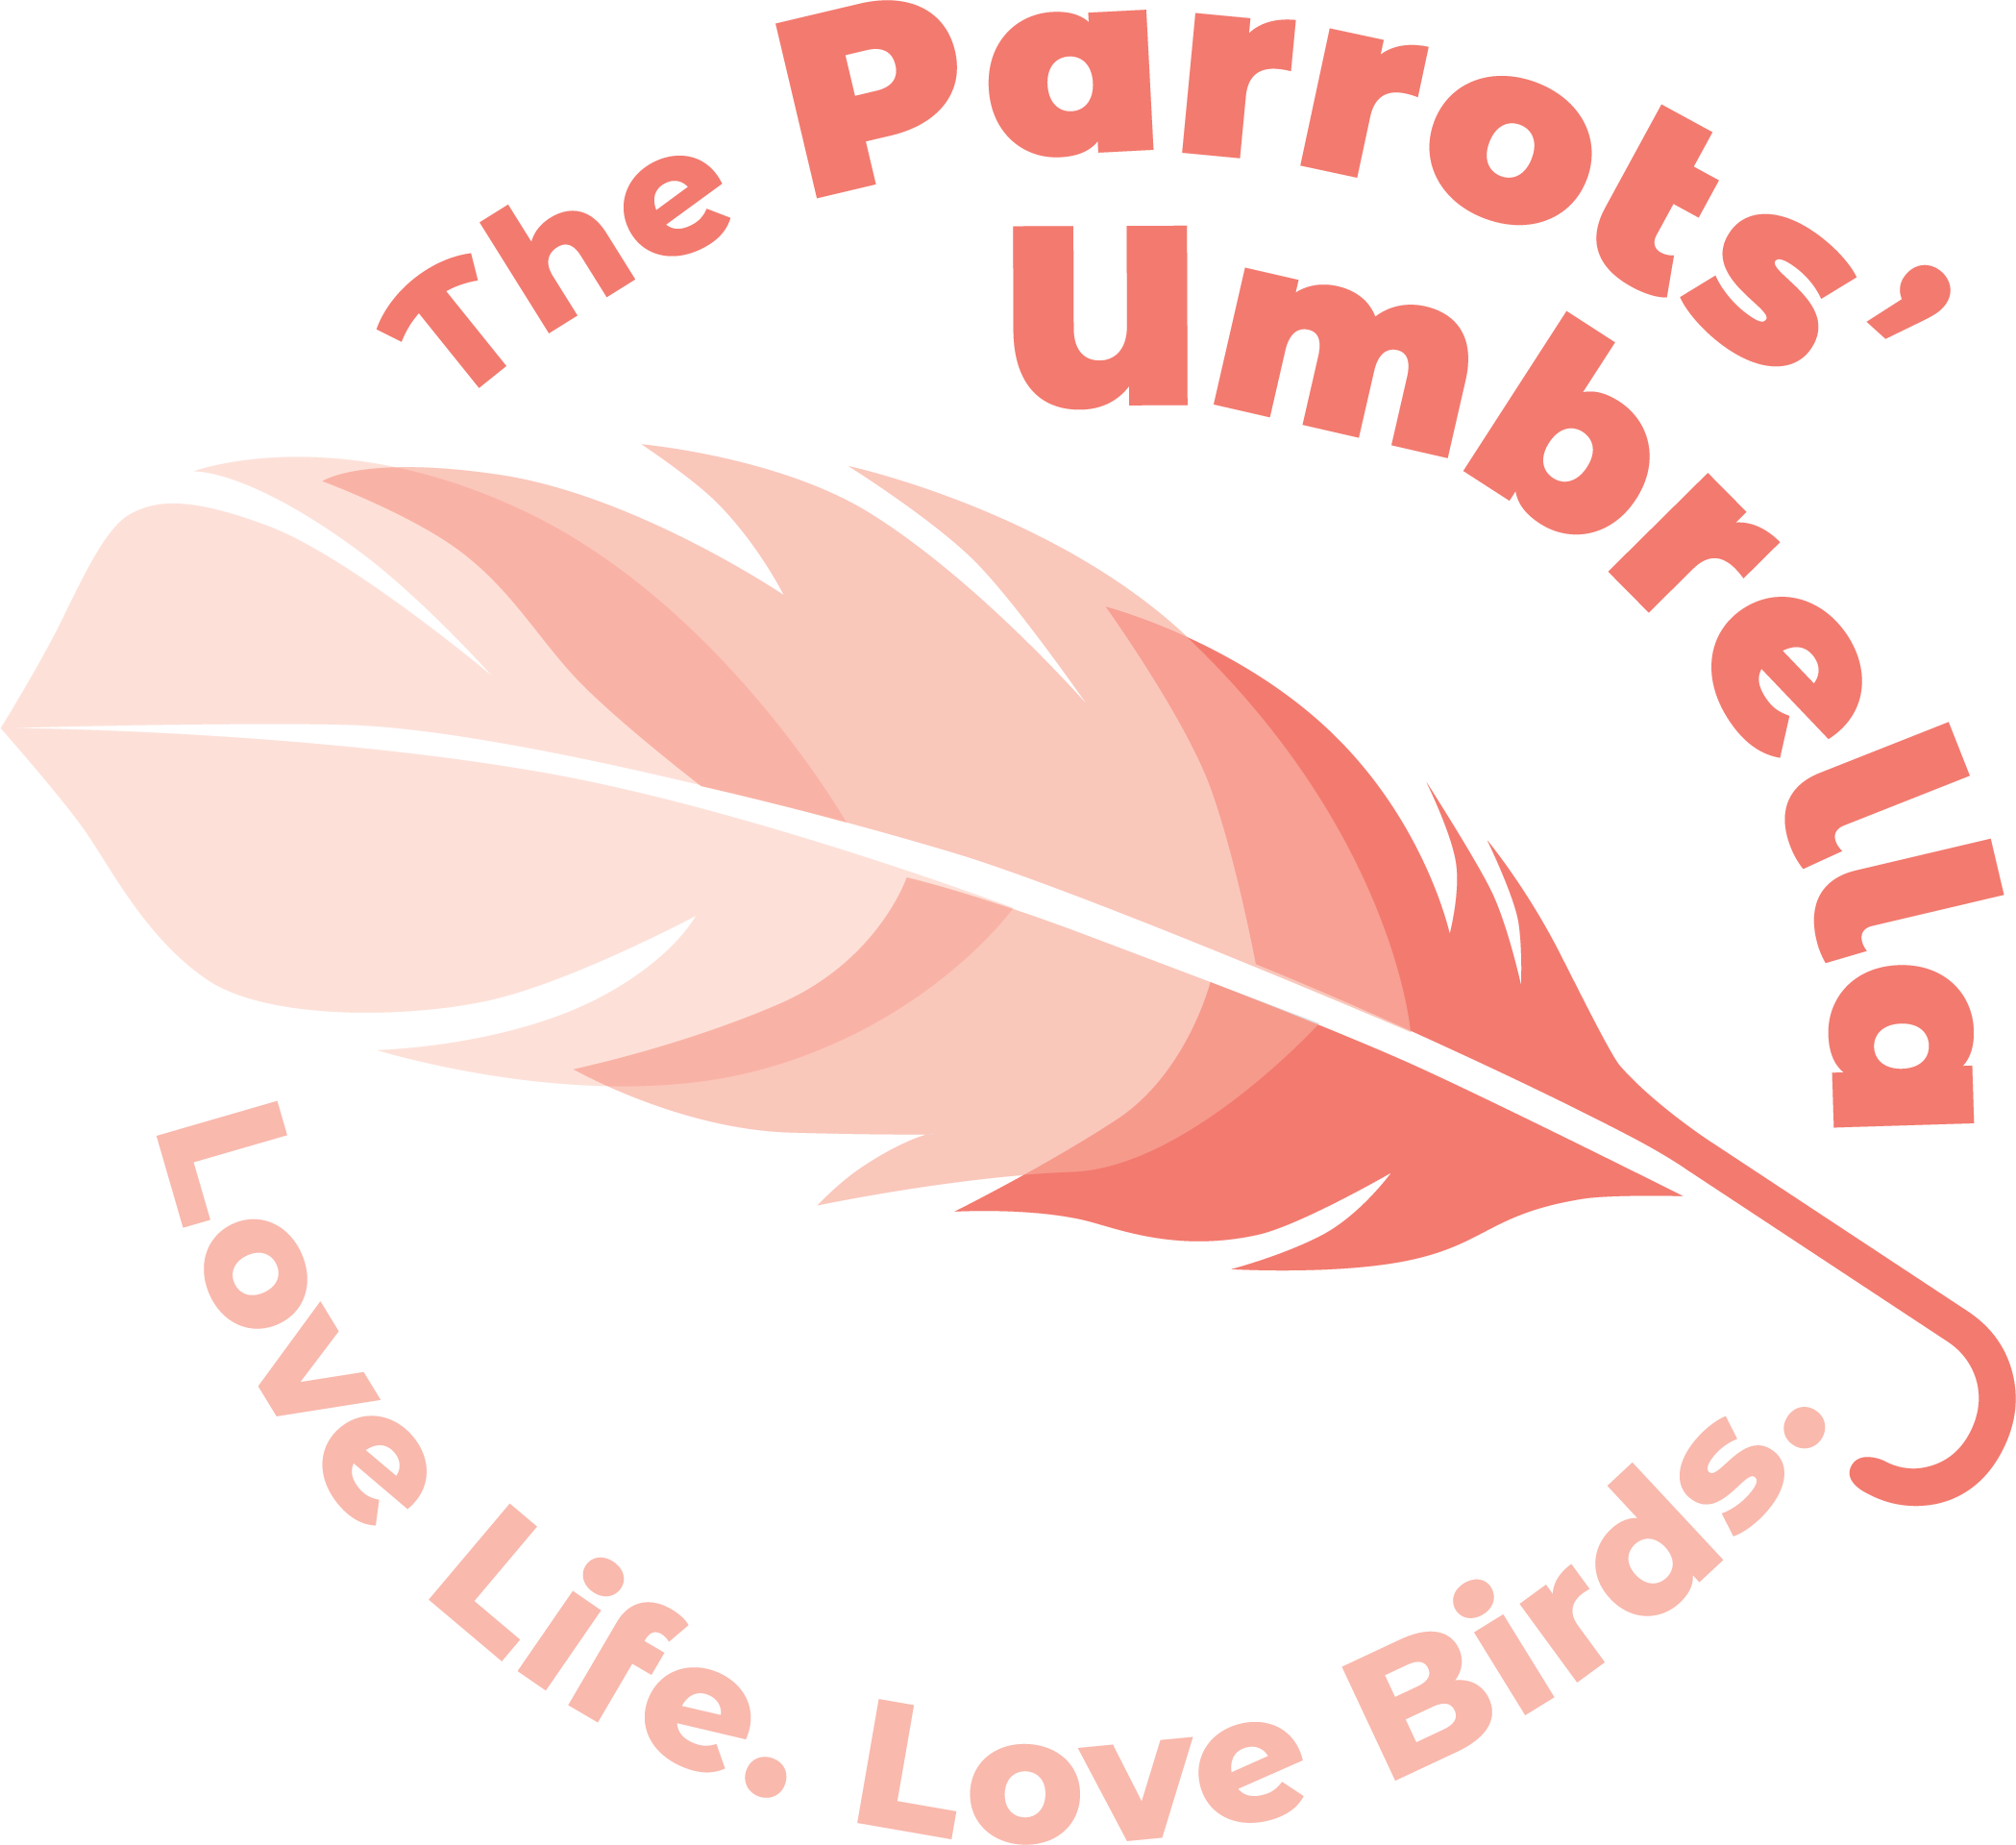 The Parrots' Umbrella